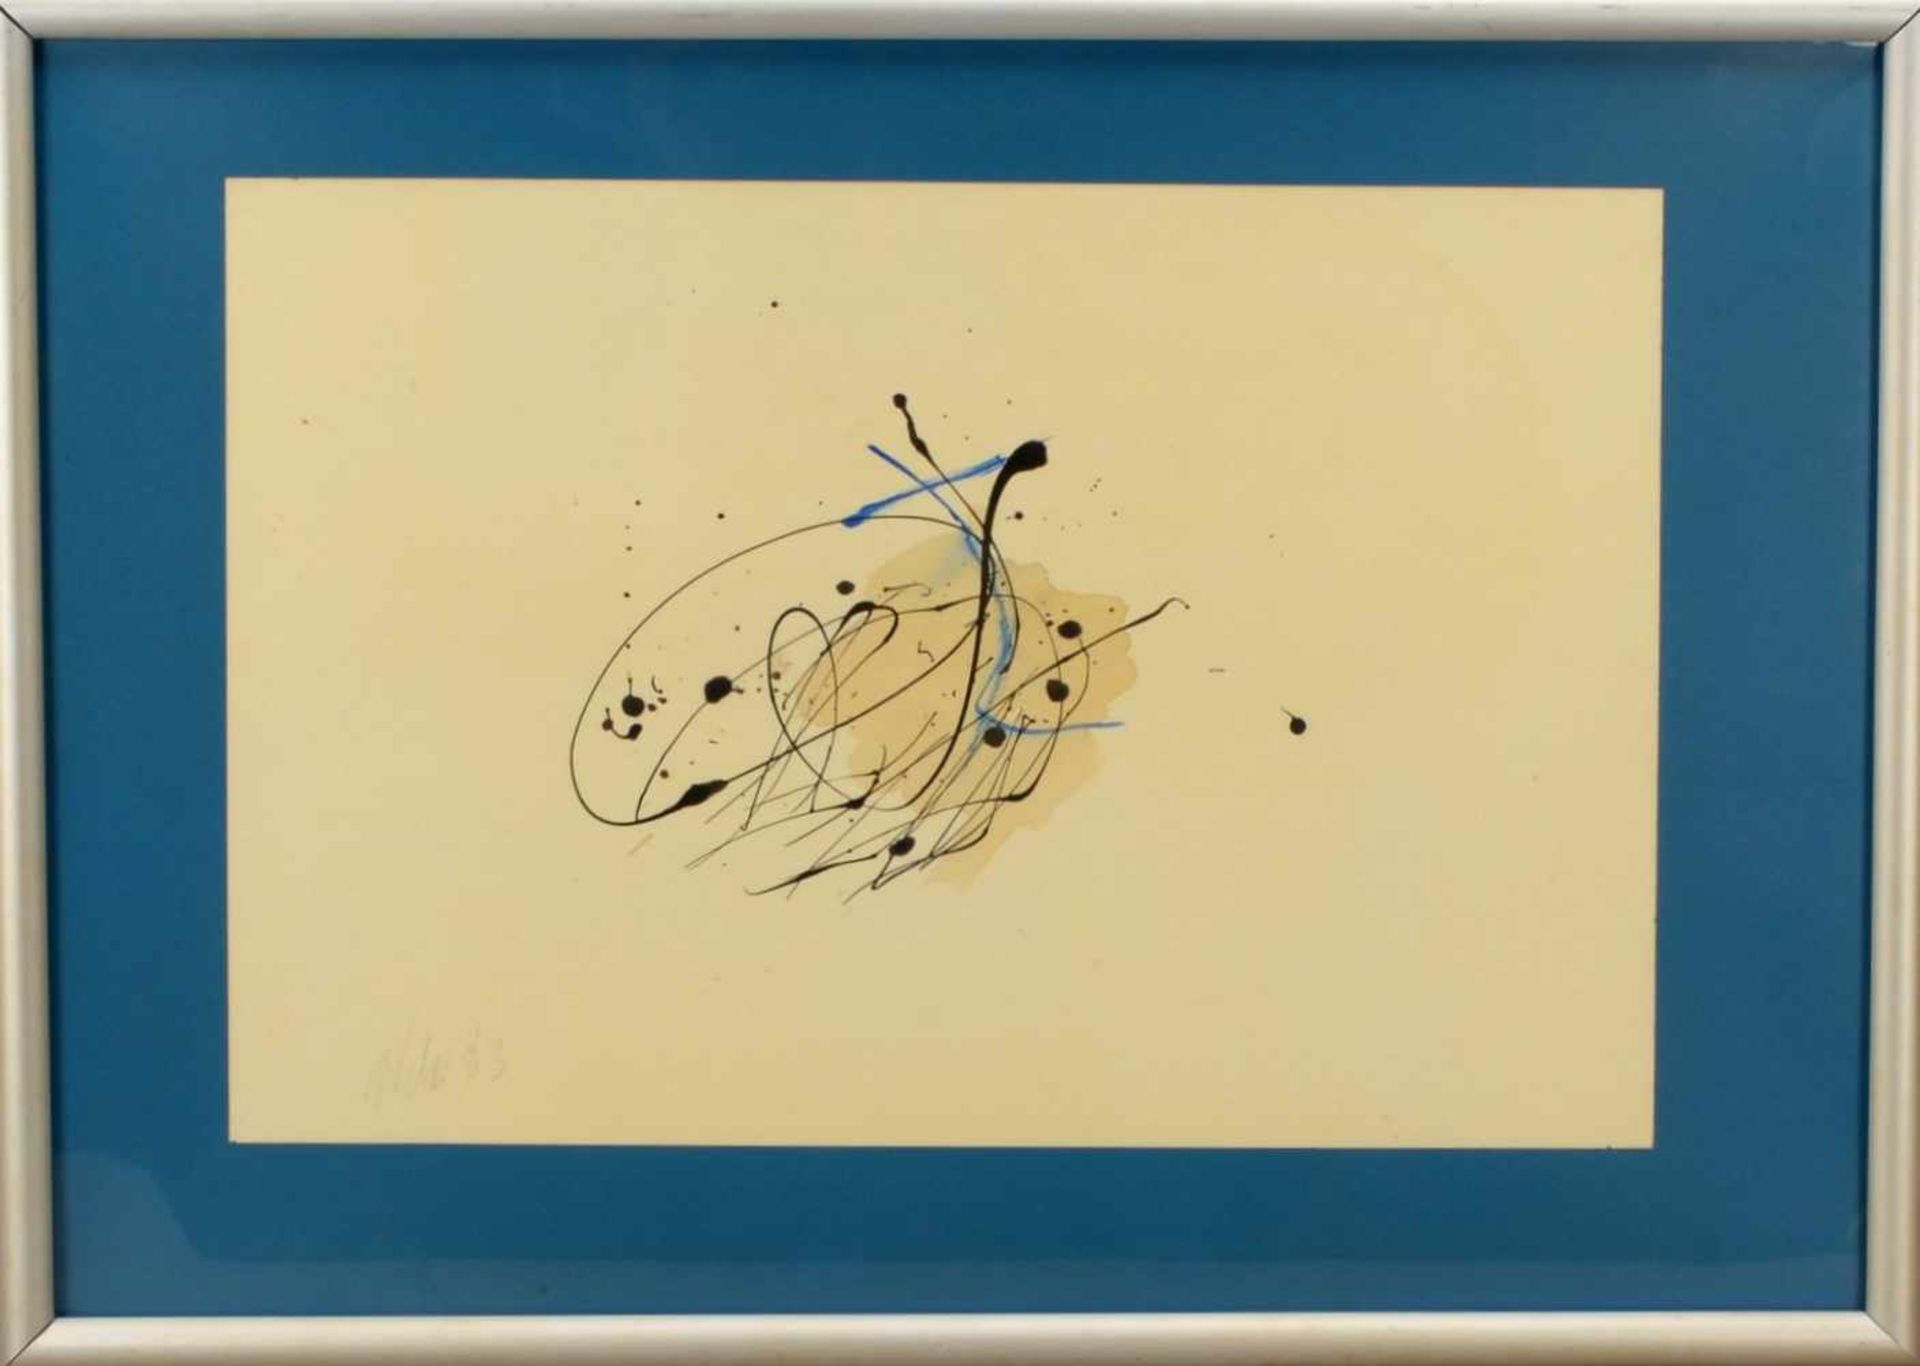 Weber, 'Abstrakte Komposition', Farblithografie, unten links signiert und datiert (19)'63', gerahmt;